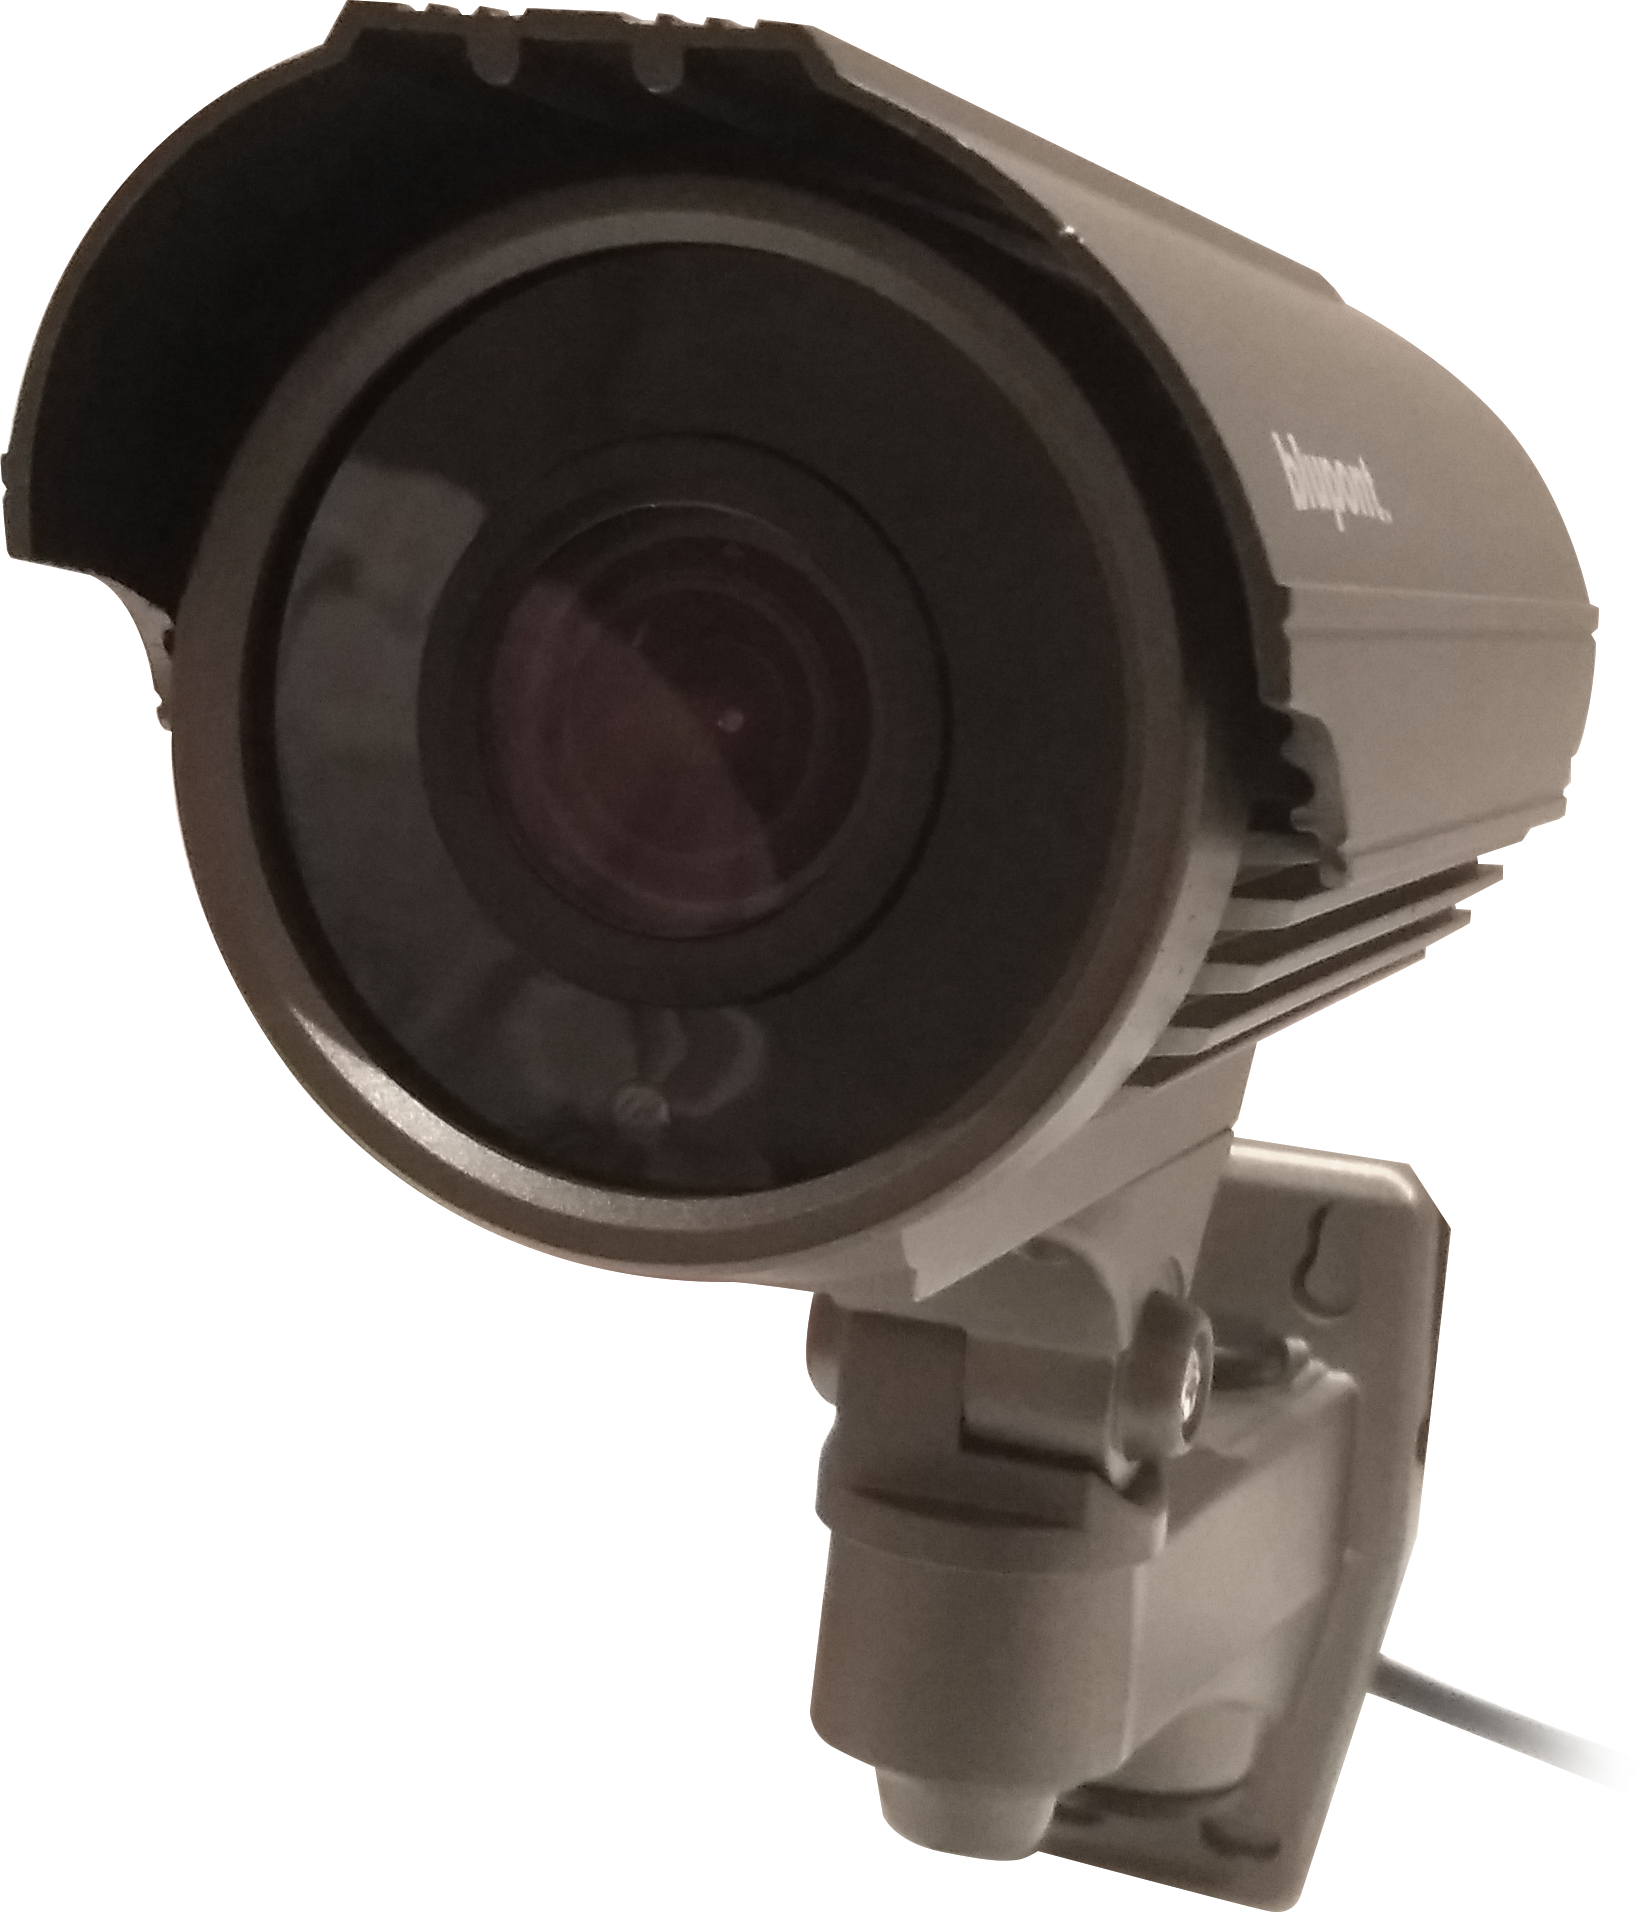 2.1MP 4in1 Grey Bullet CCTV Camera